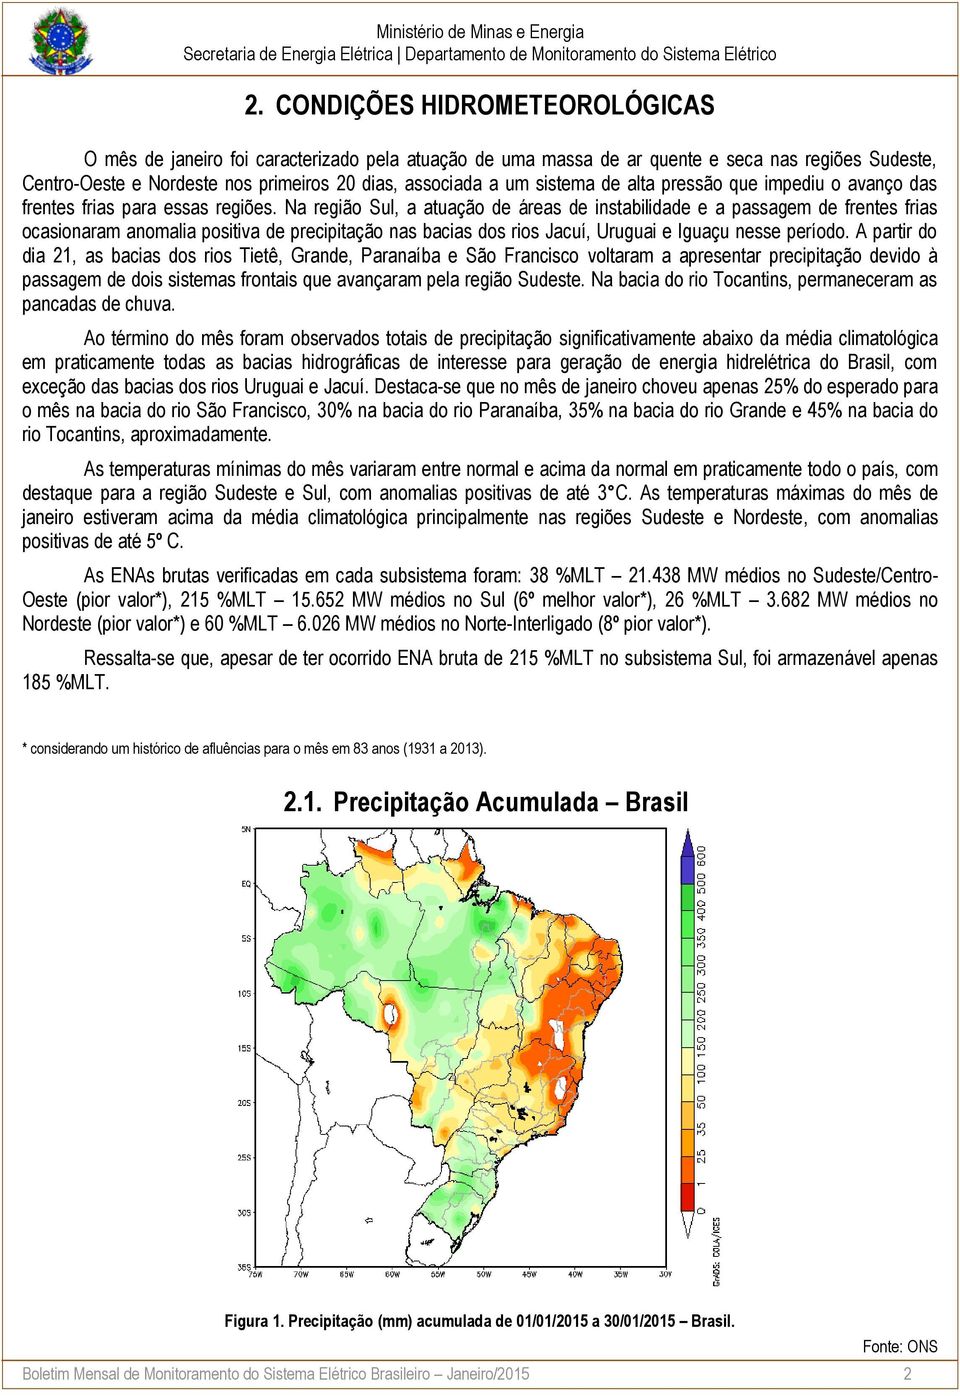 Na região Sul, a atuação de áreas de instabilidade e a passagem de frentes frias ocasionaram anomalia positiva de precipitação nas bacias dos rios Jacuí, Uruguai e Iguaçu nesse período.